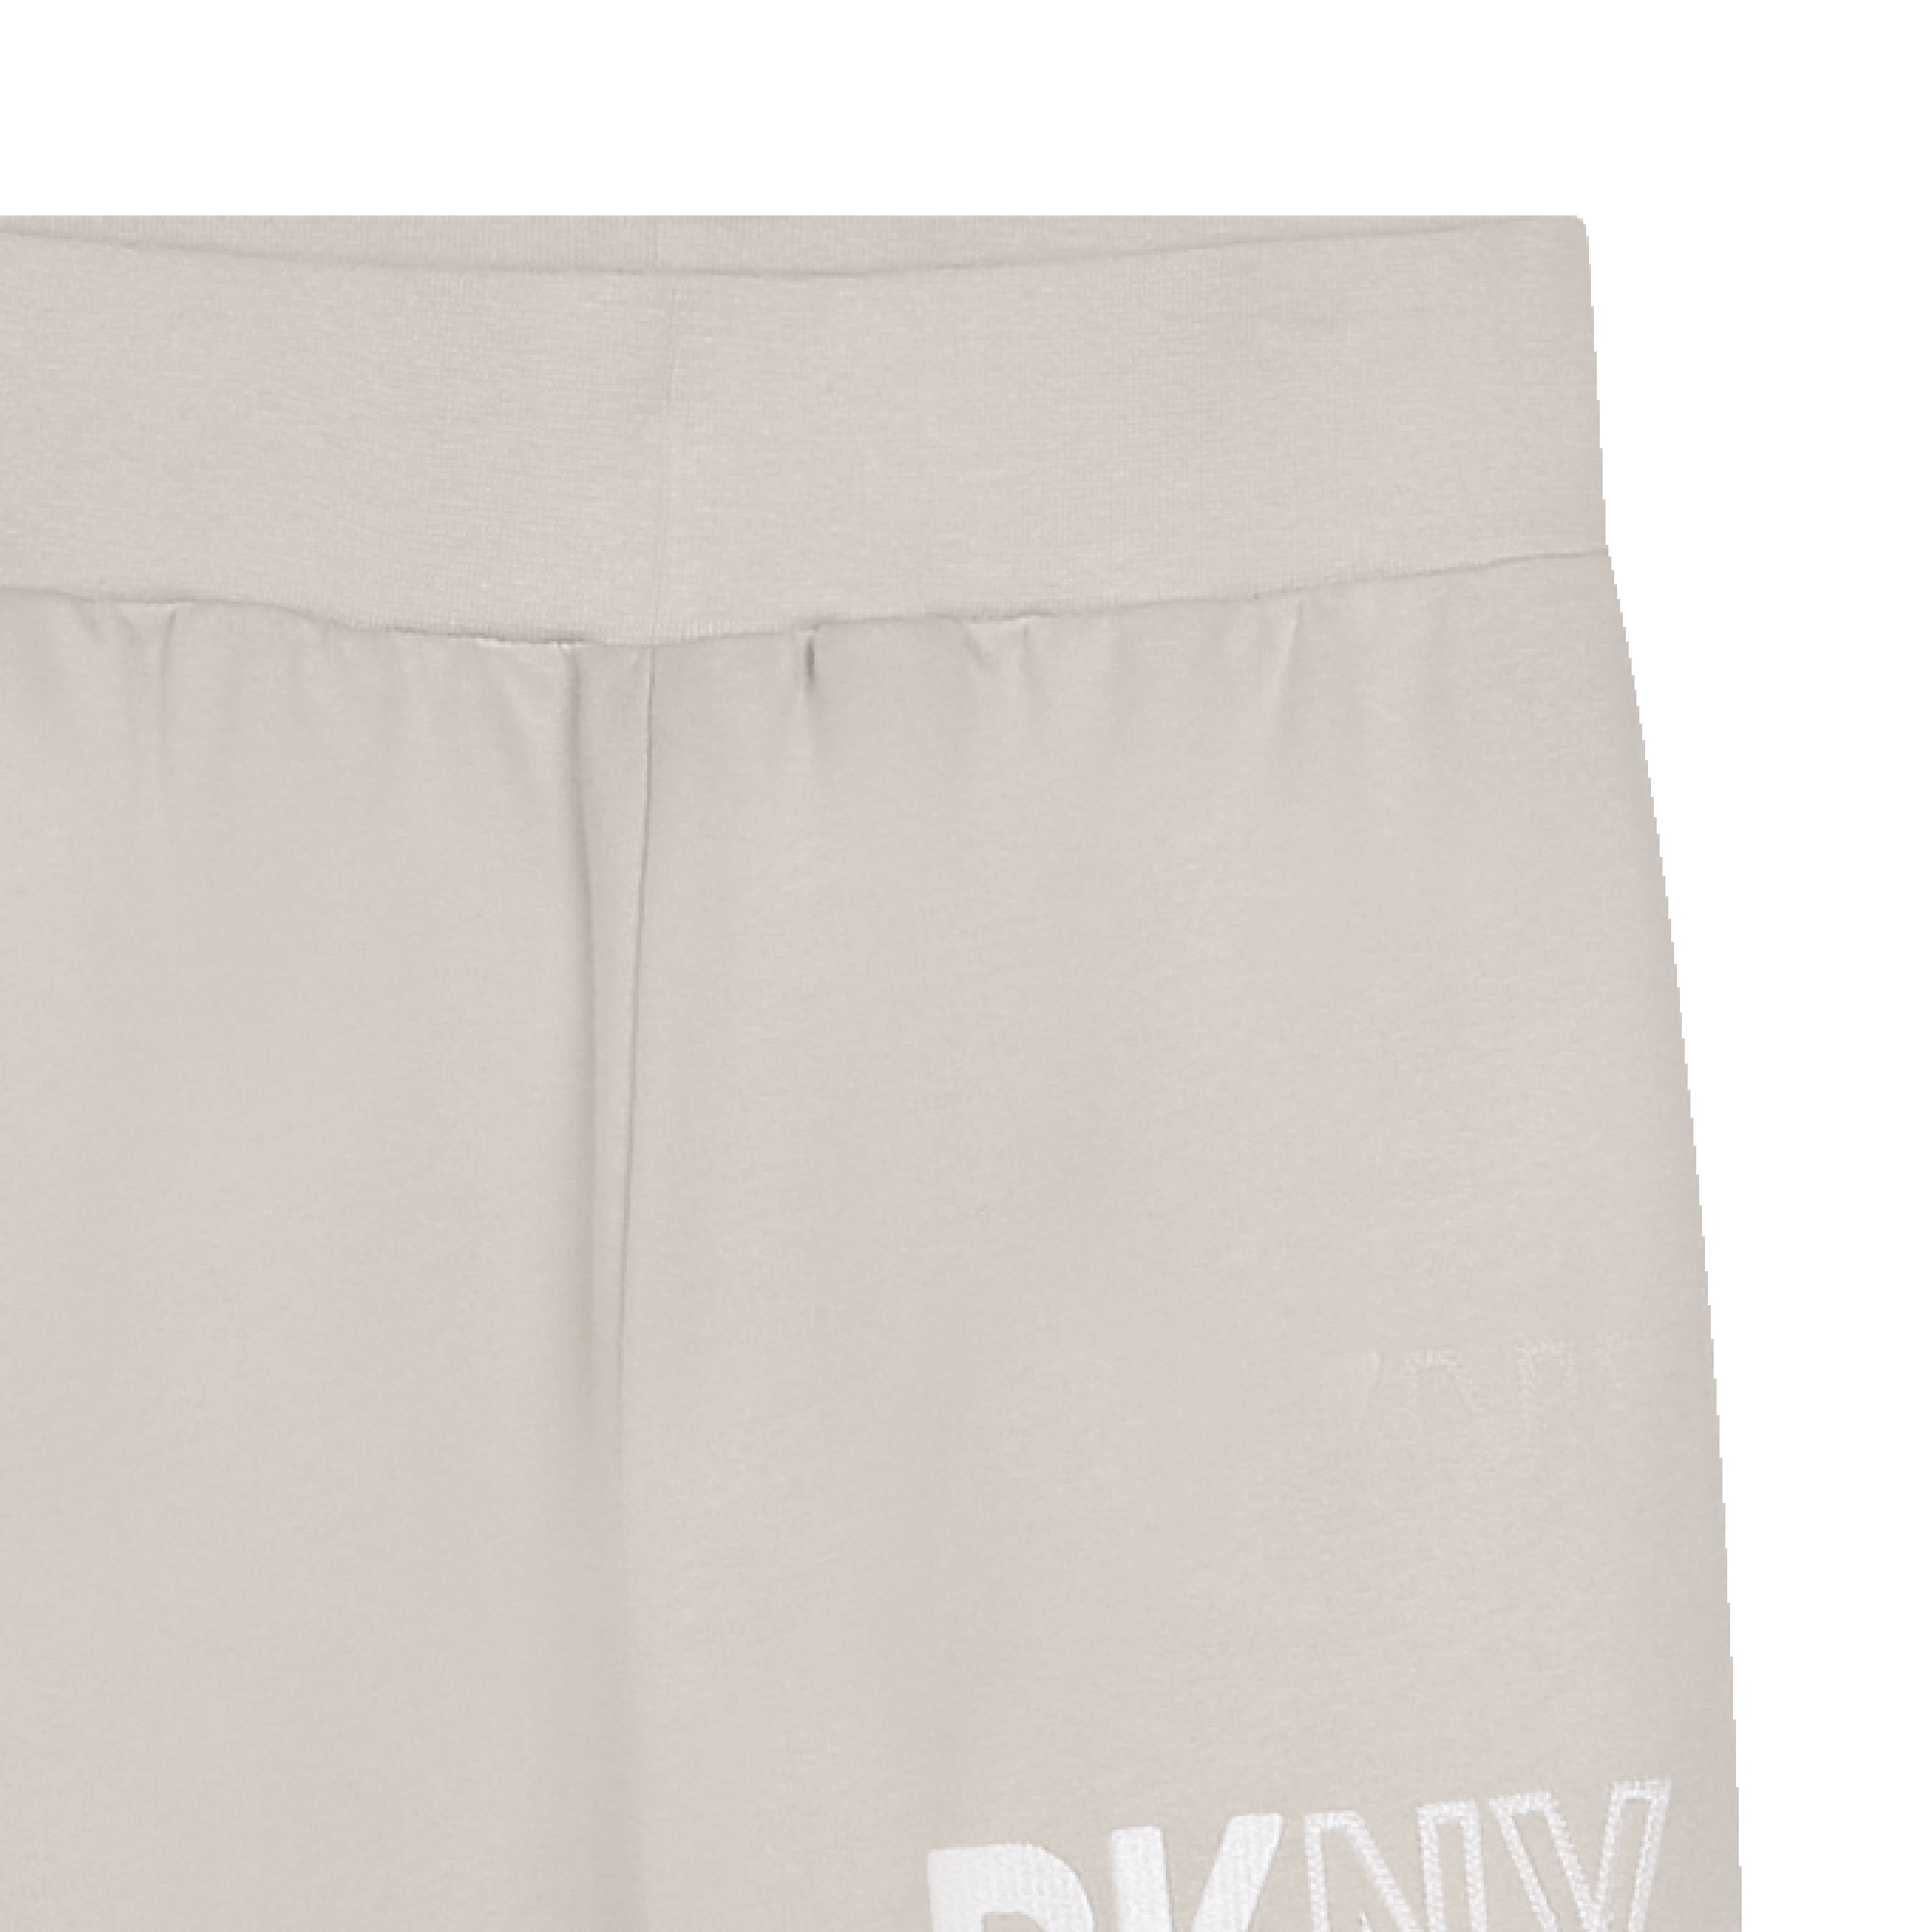 Pantalón de chándal unisex DKNY para UNISEXO